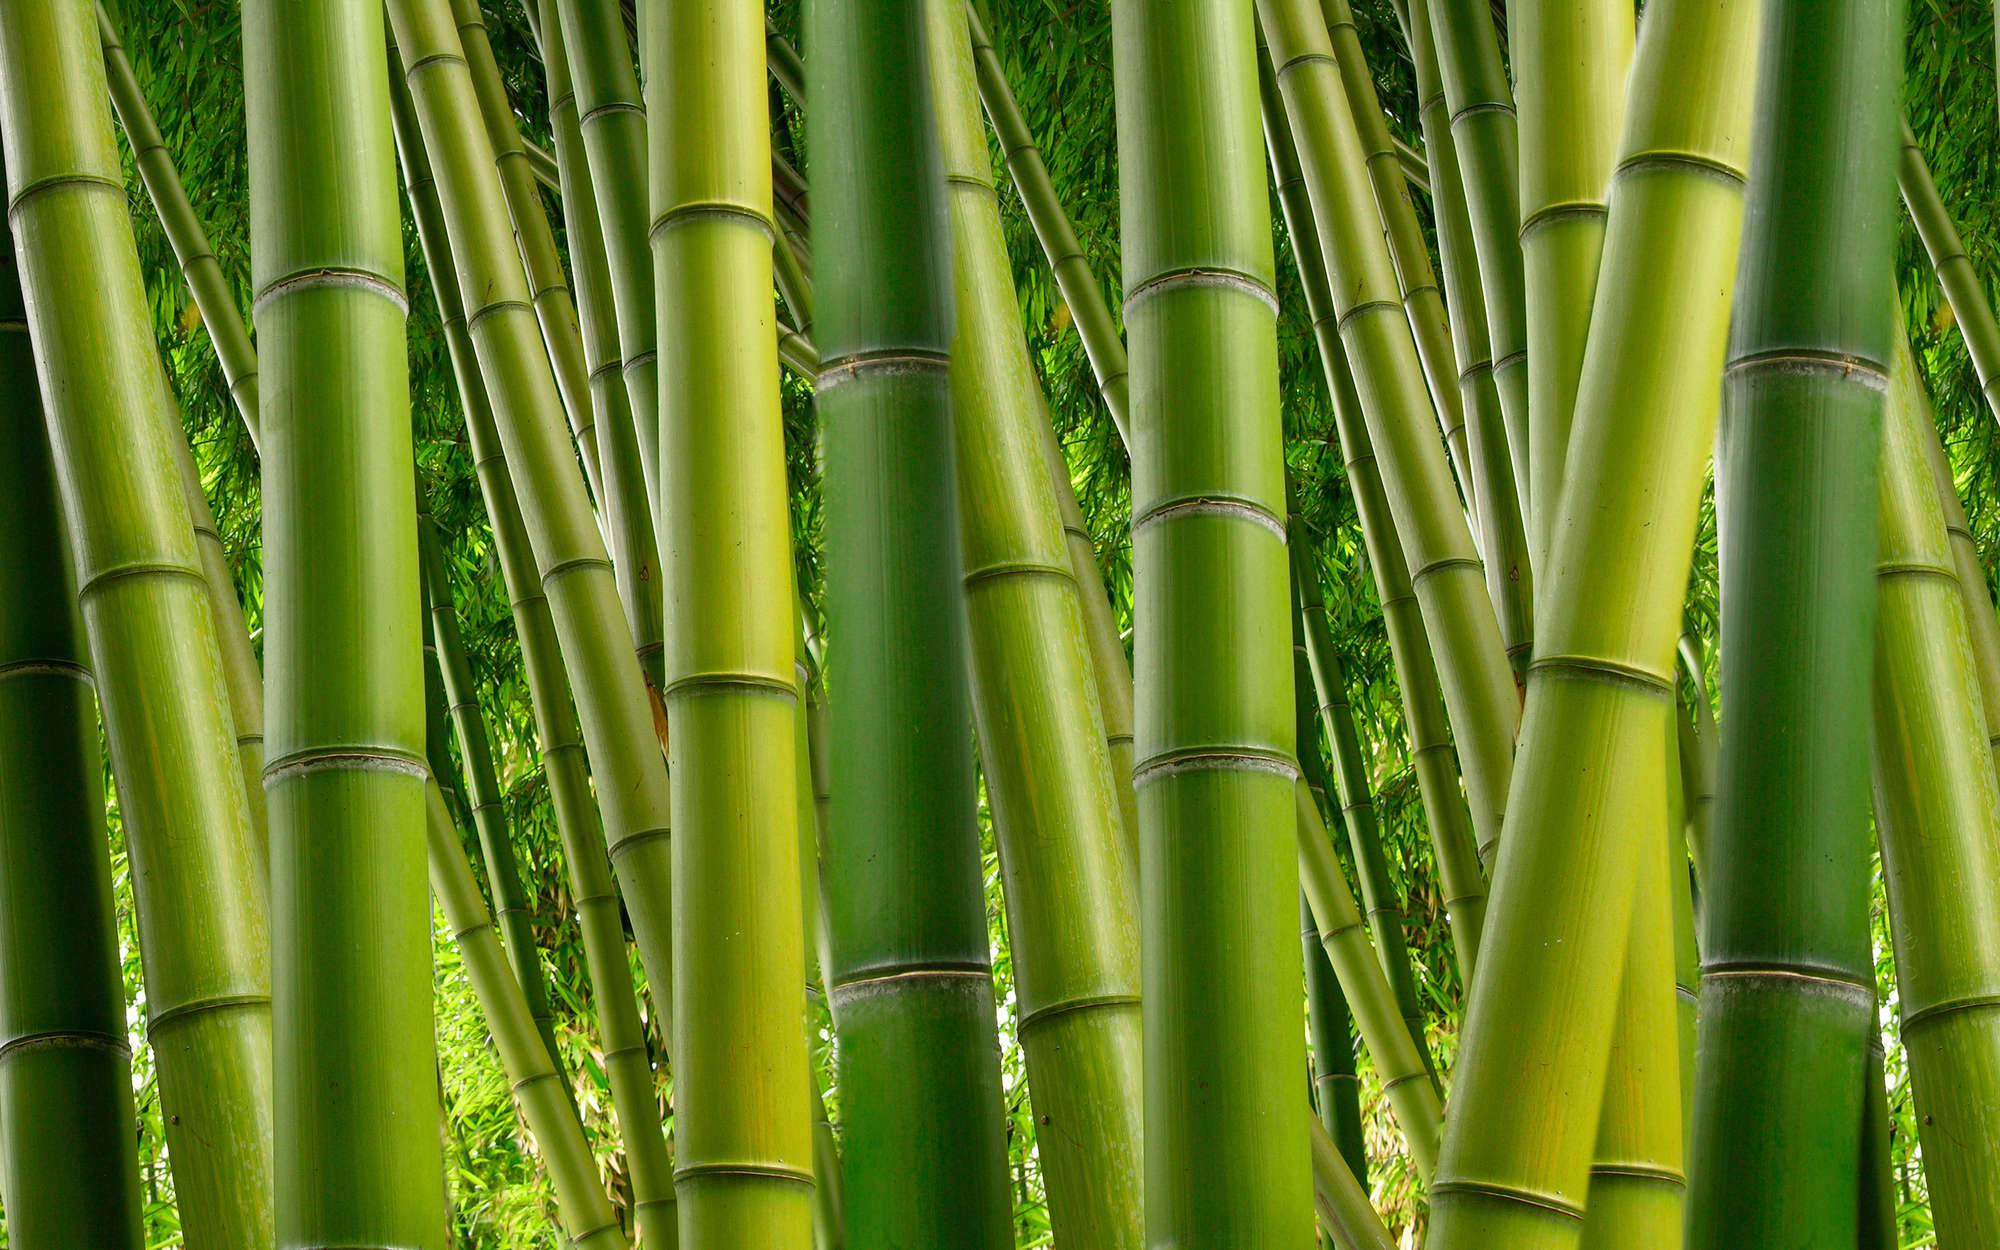             Natur Fototapete Bambus in Grün – Strukturiertes Vlies
        